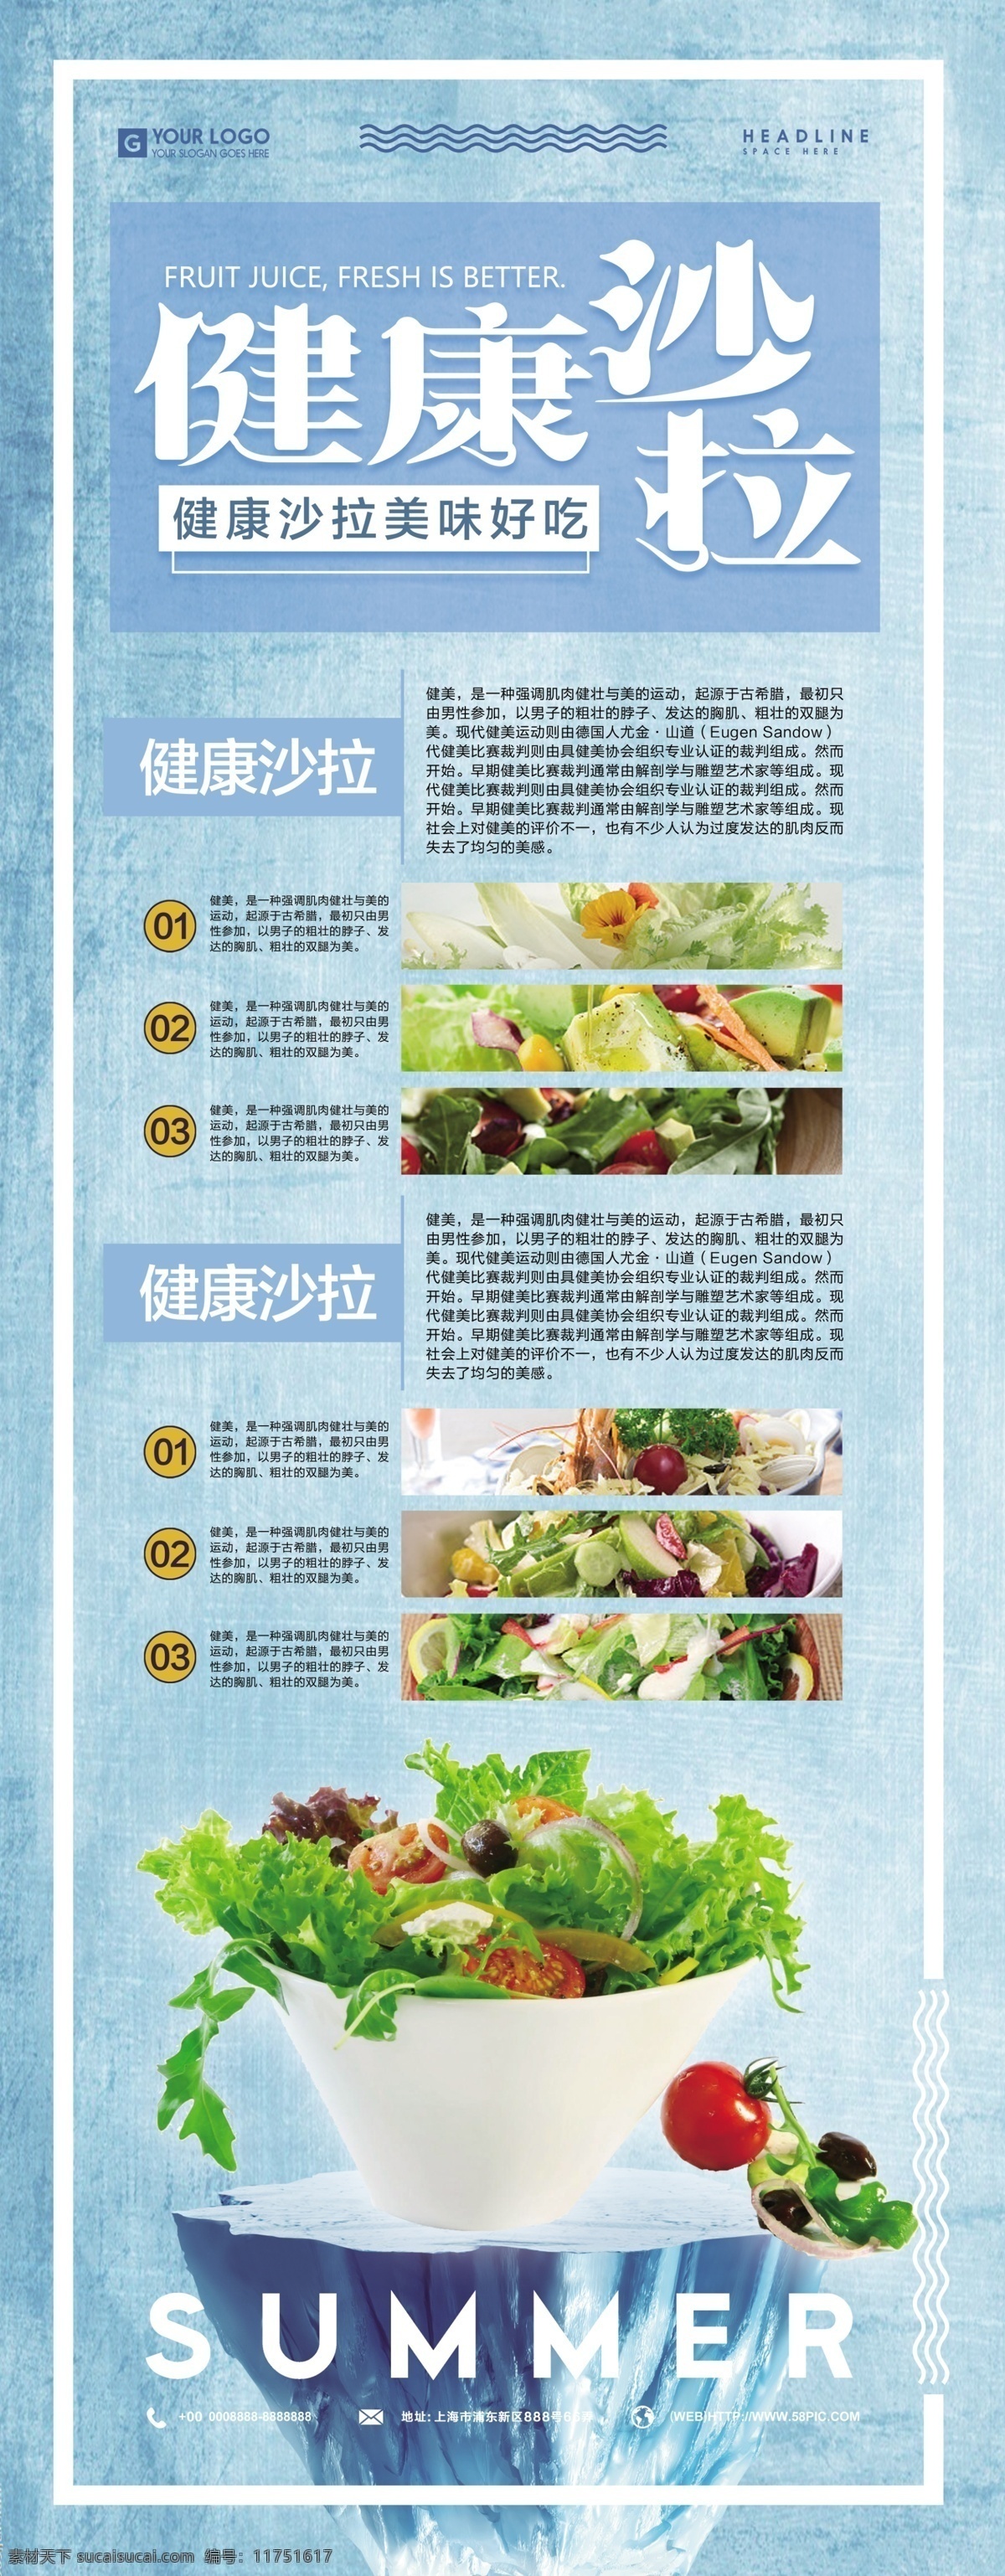 健康 蔬菜 沙拉 展架 易拉宝 健康食品 水果沙拉 蔬菜沙拉